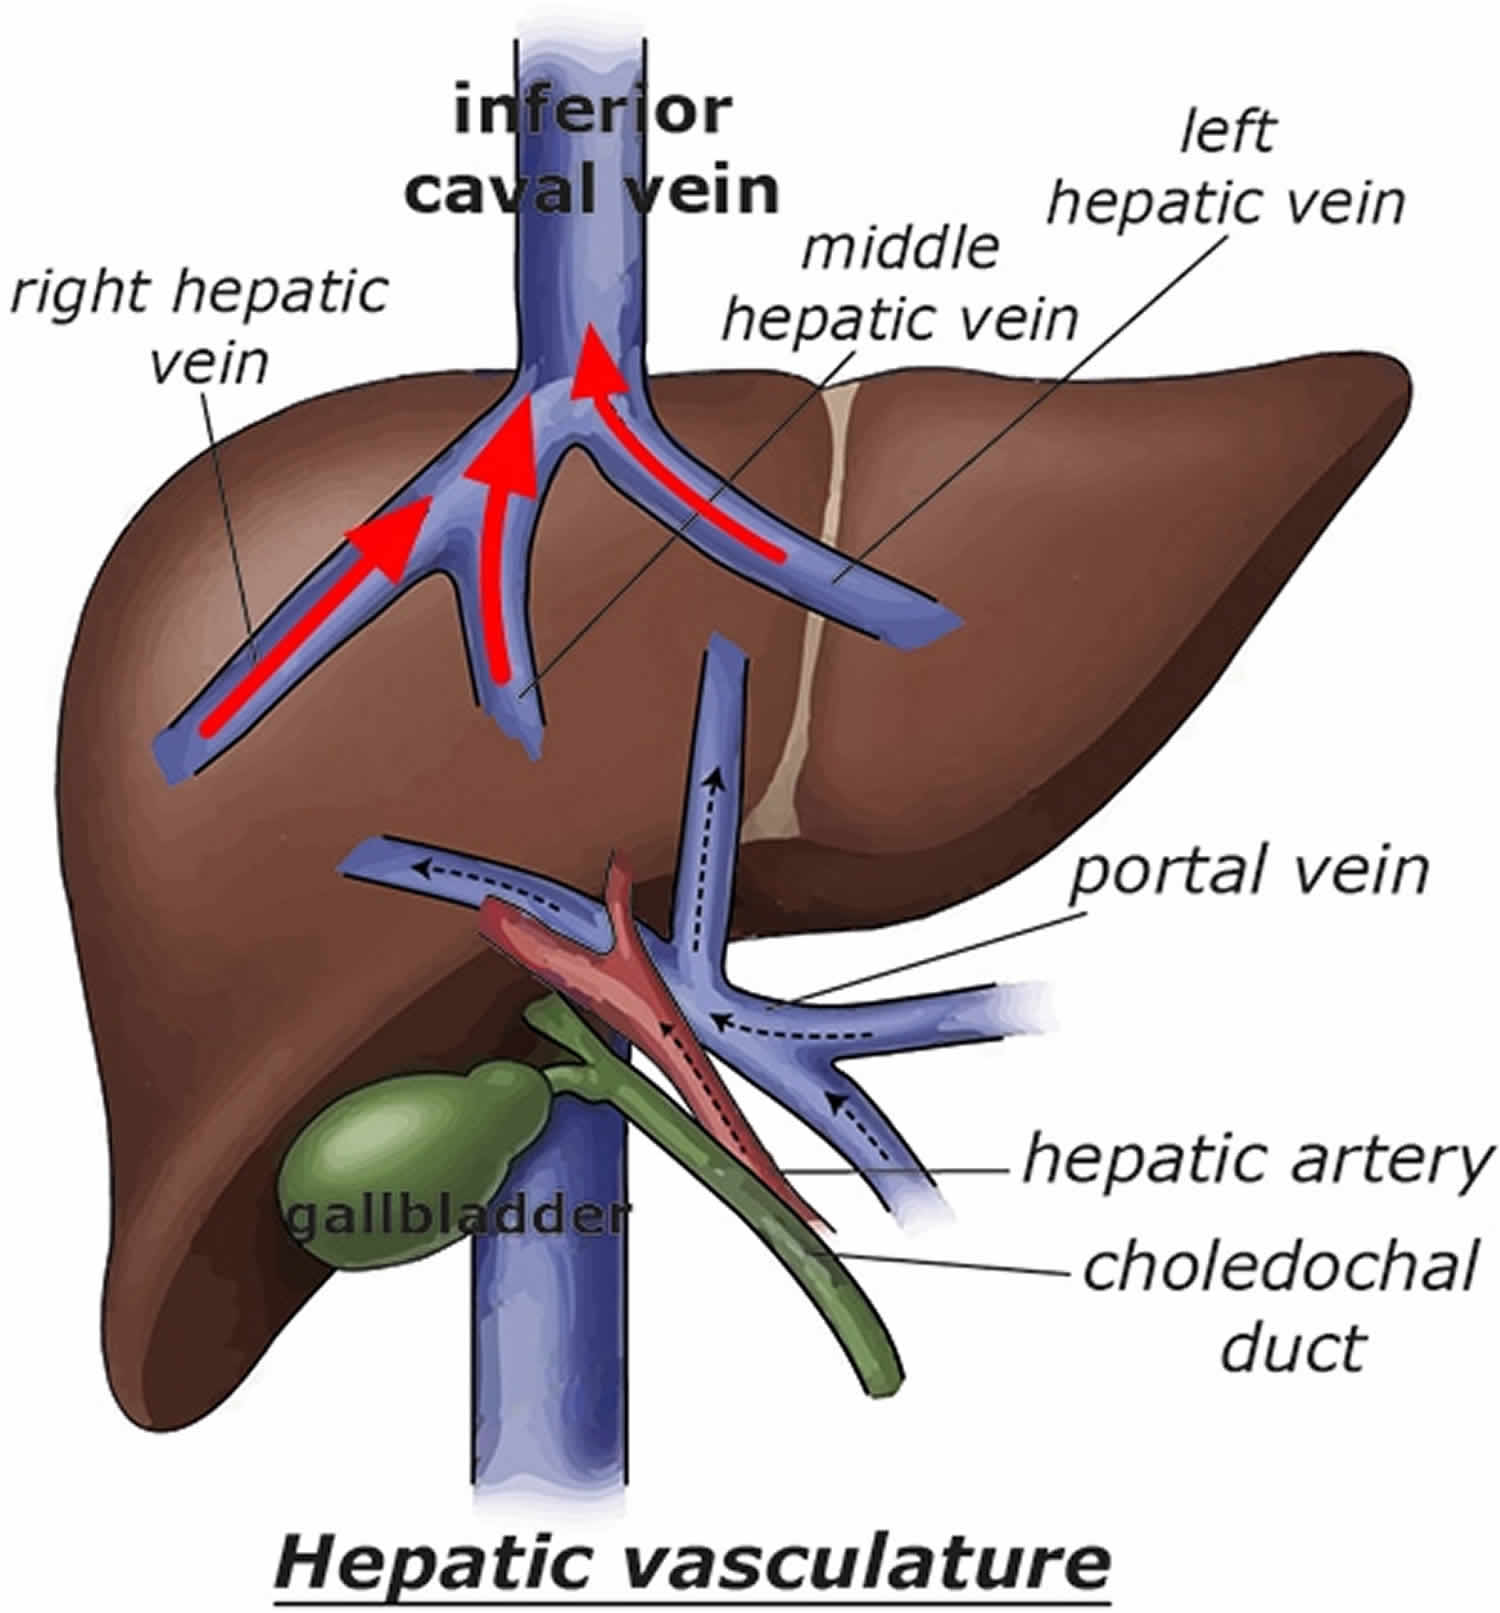 Hepatic vein